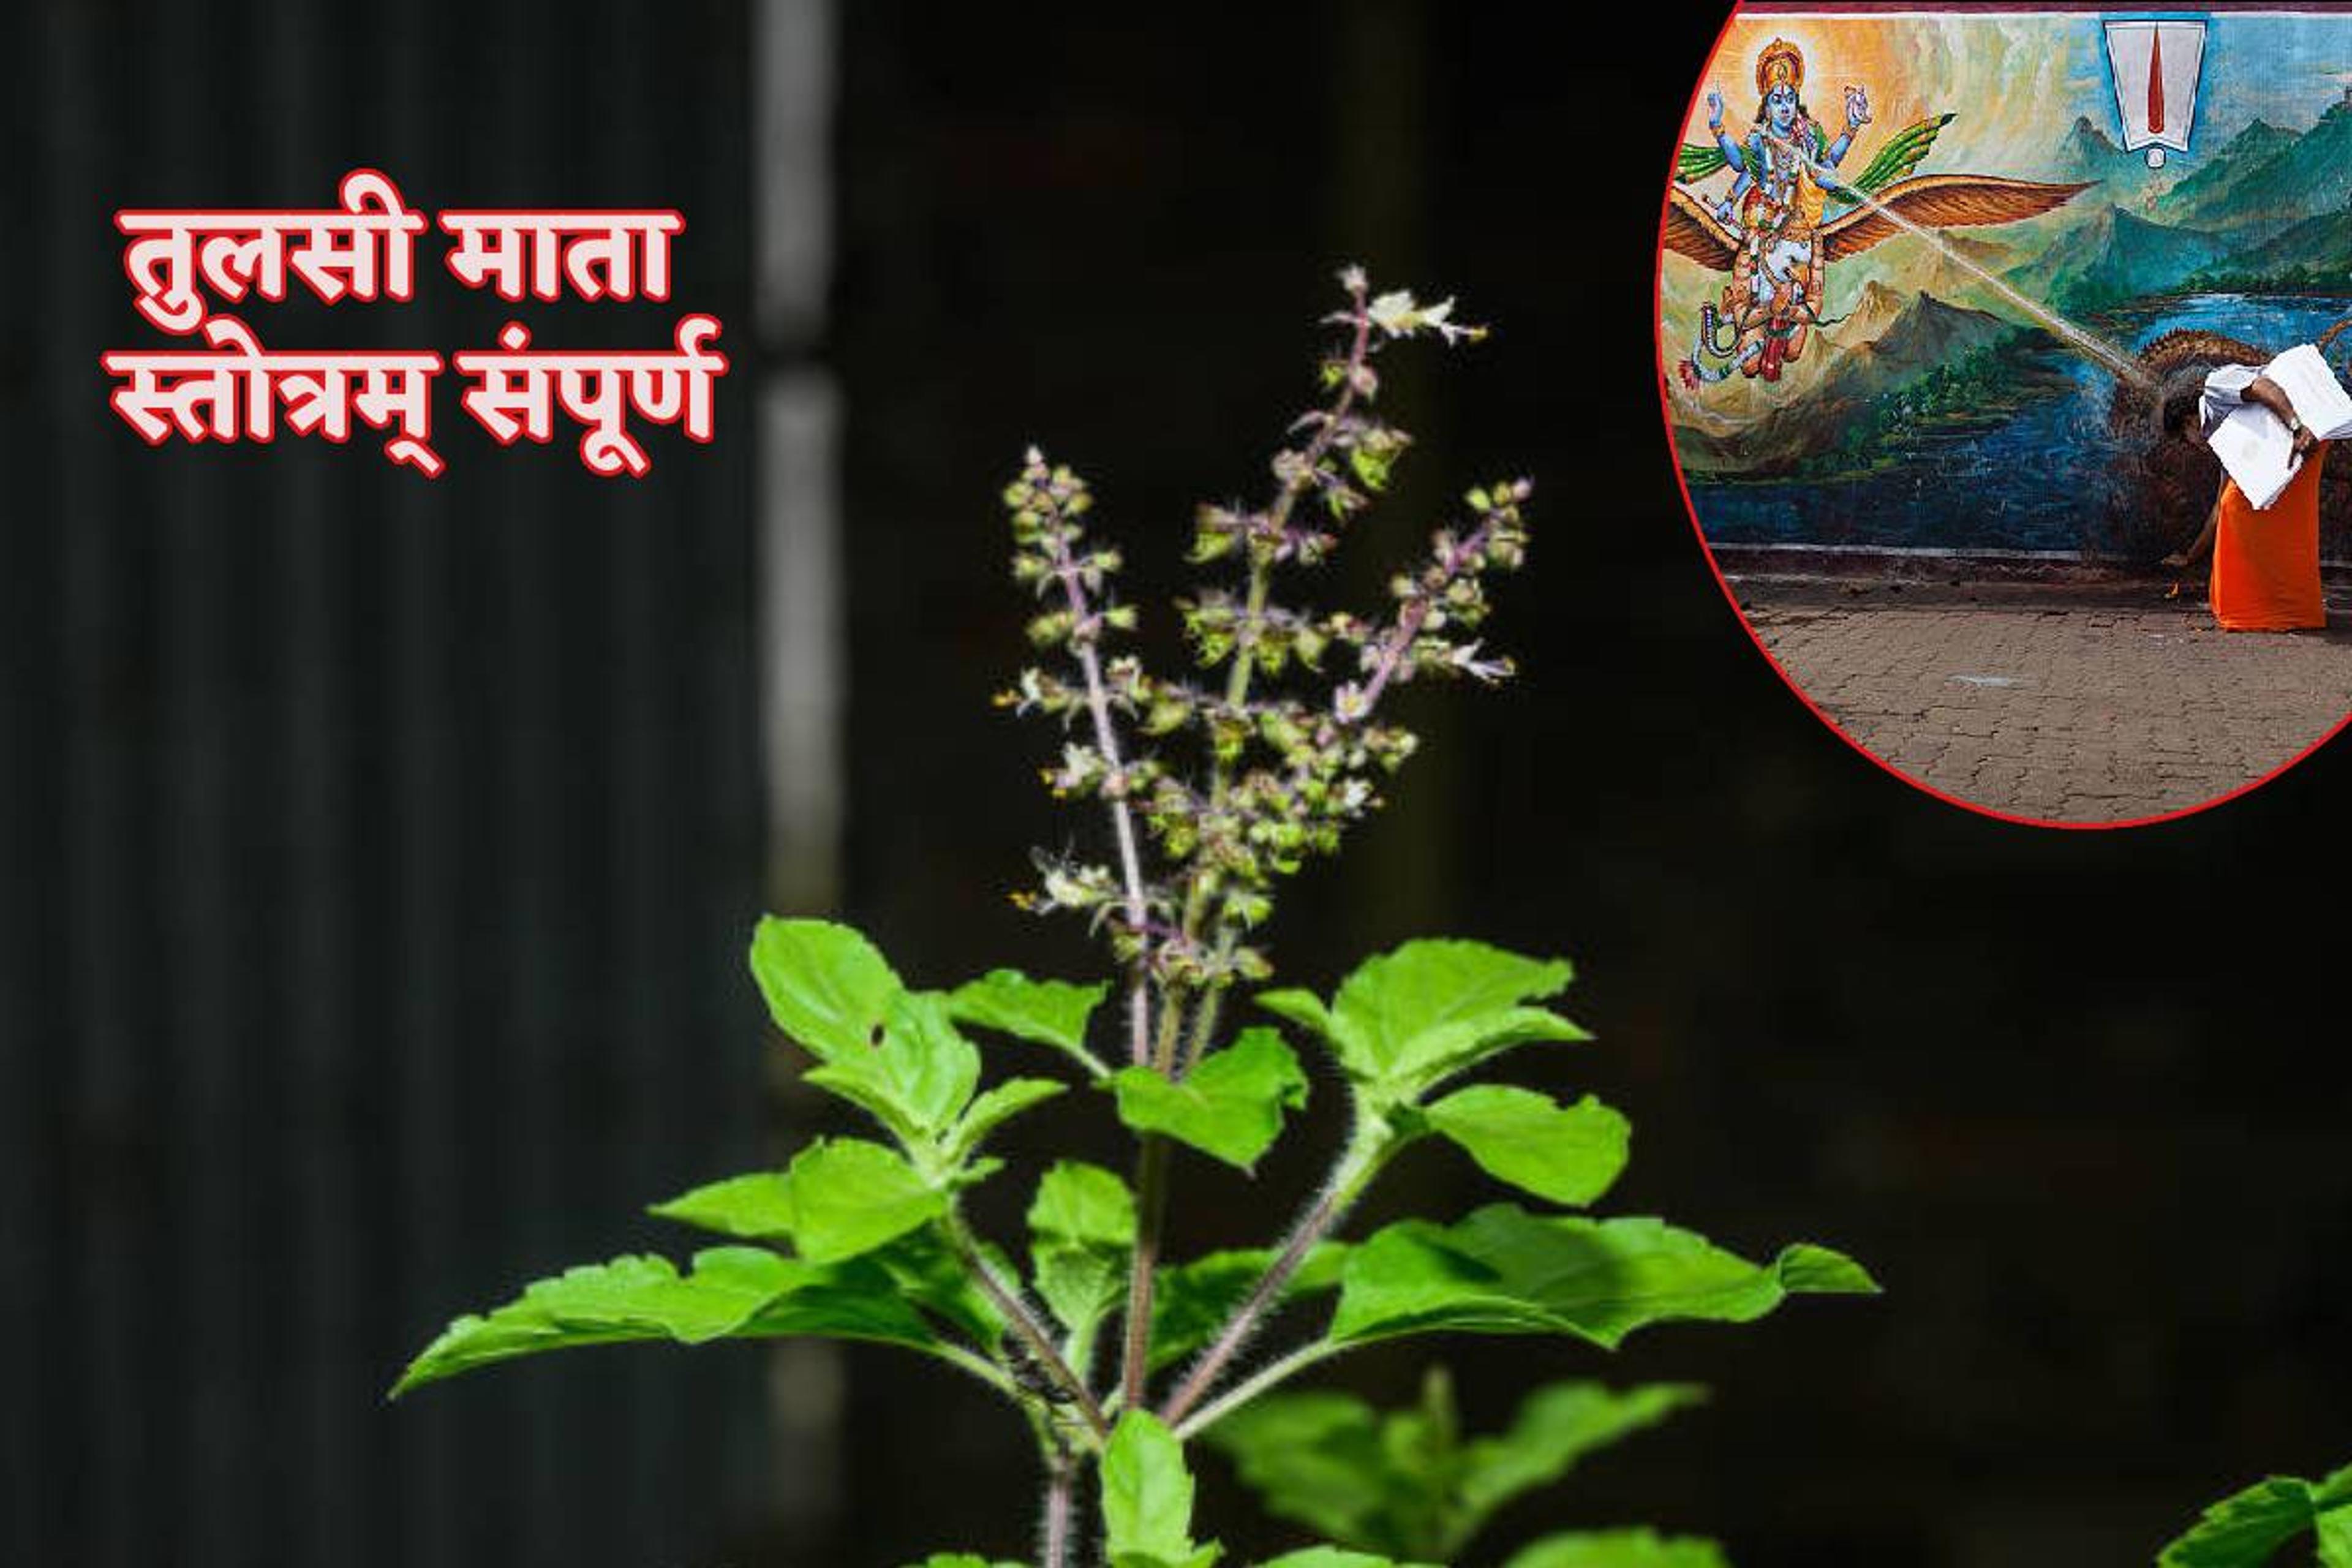 Kharmas Tulsi Puja: तुलसी माता स्तोत्र पाठ का खरमास में विशेष महत्व, भगवान विष्णु का मिलता है आशीर्वाद